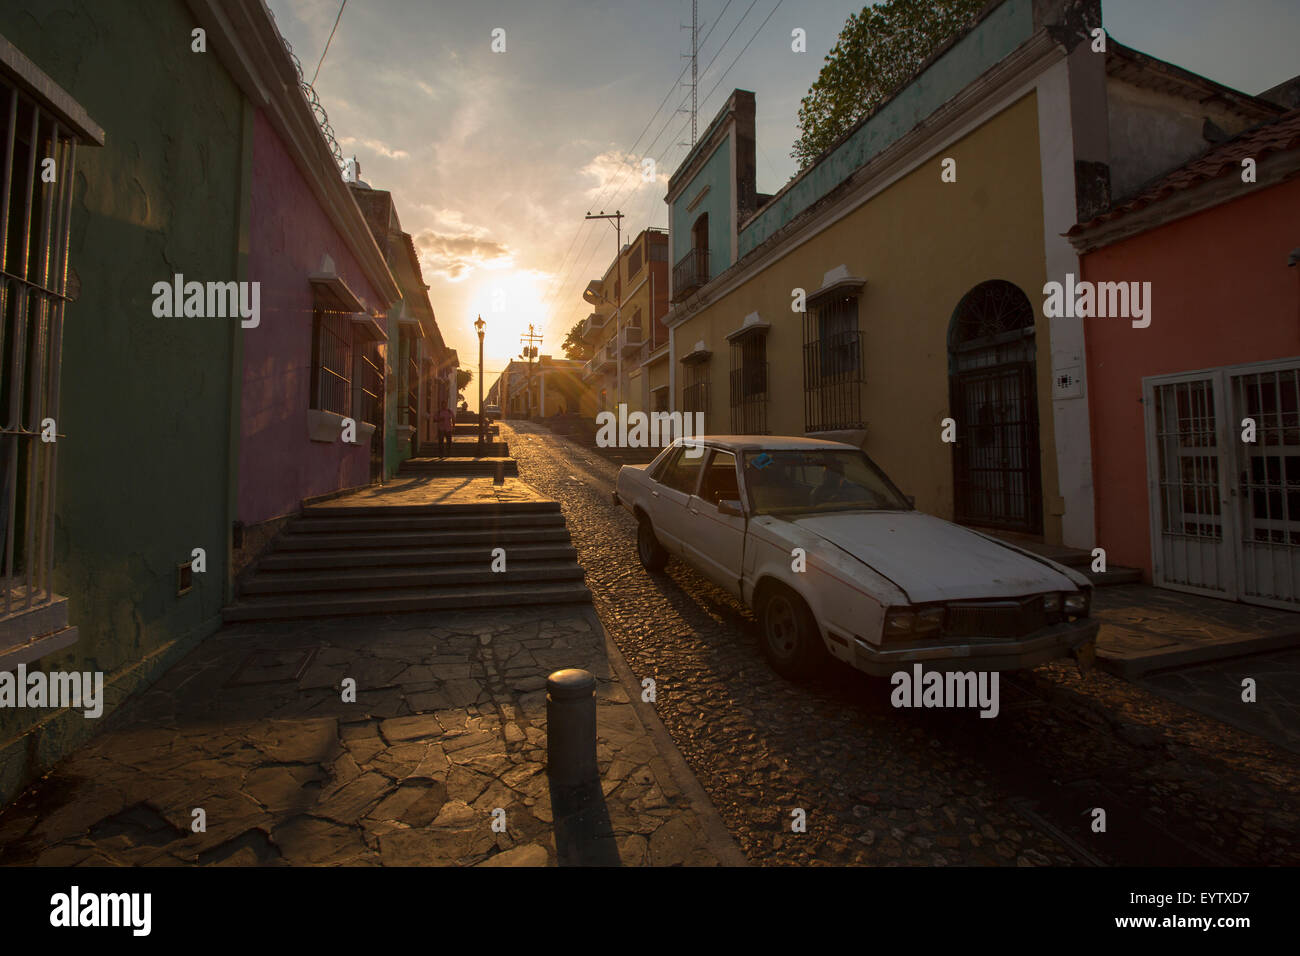 Tramonto nella vecchia strada coloniale con una vettura andando attraverso, molto tipica vista di Ciudad Bolivar con la sua vecchia strada scale. Foto Stock